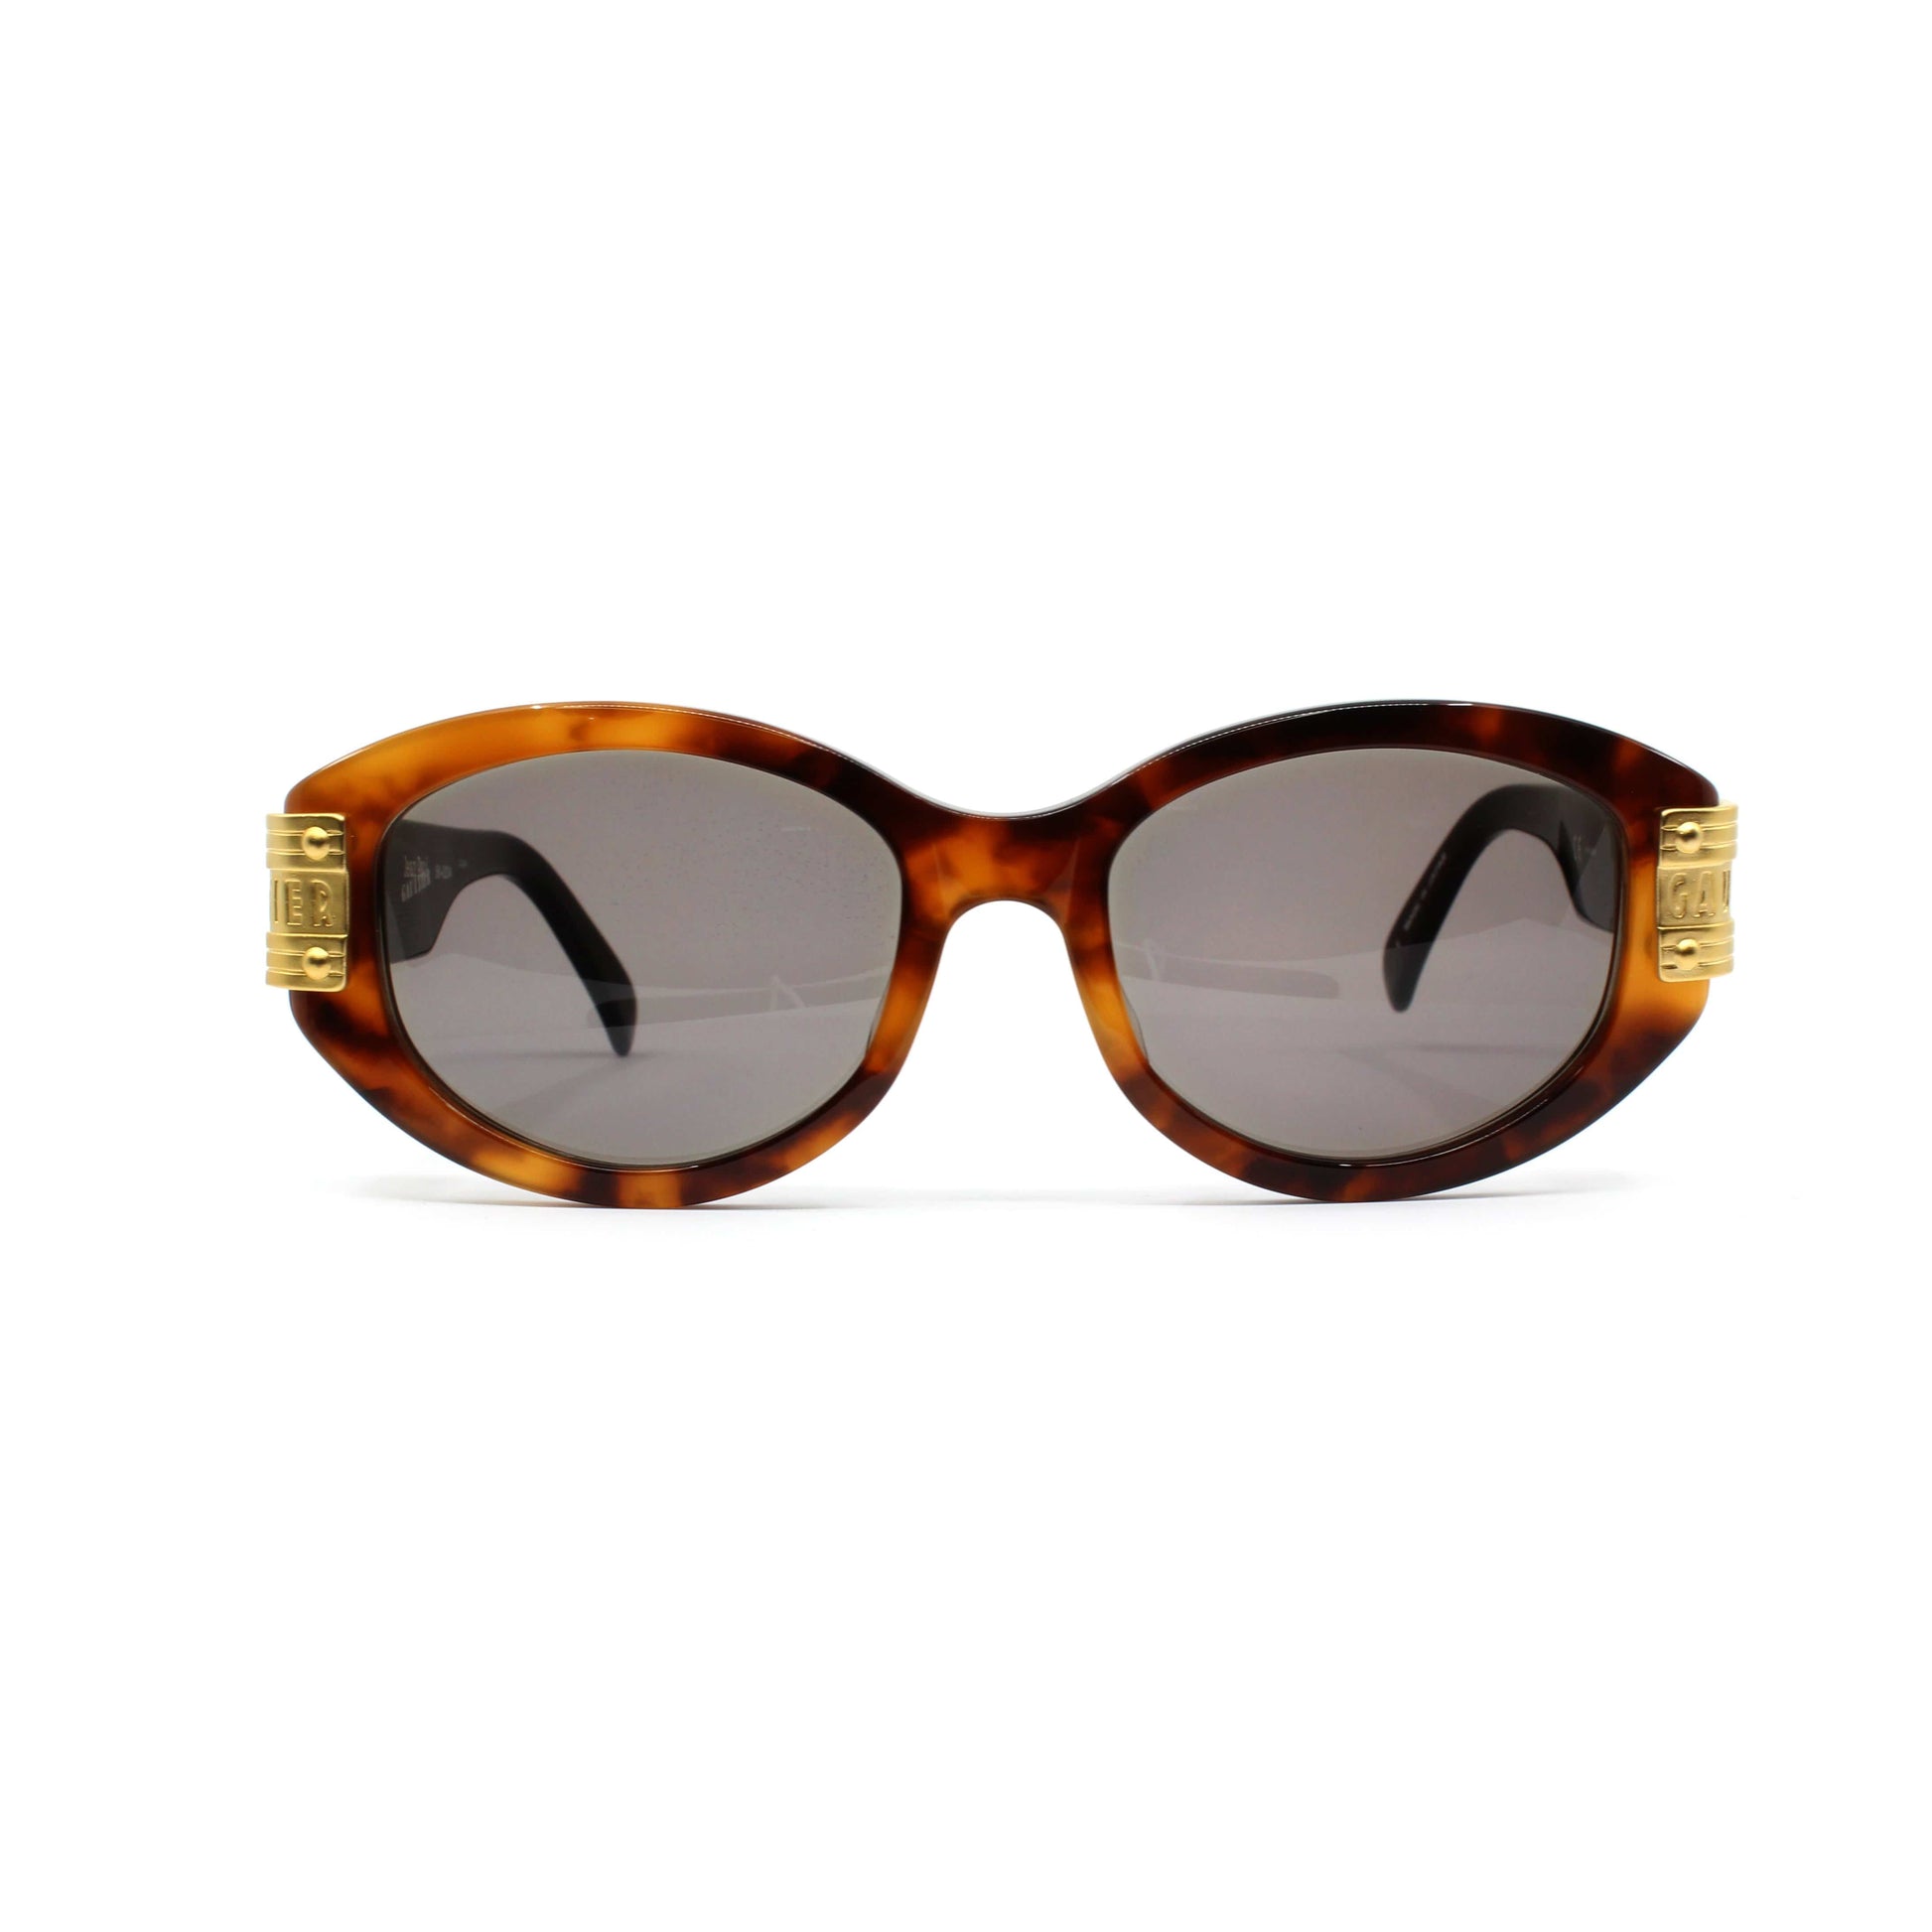 Tortoise Vintage Jean Paul Gaultier 56-5204 Sunglasses RSTKD Vintage